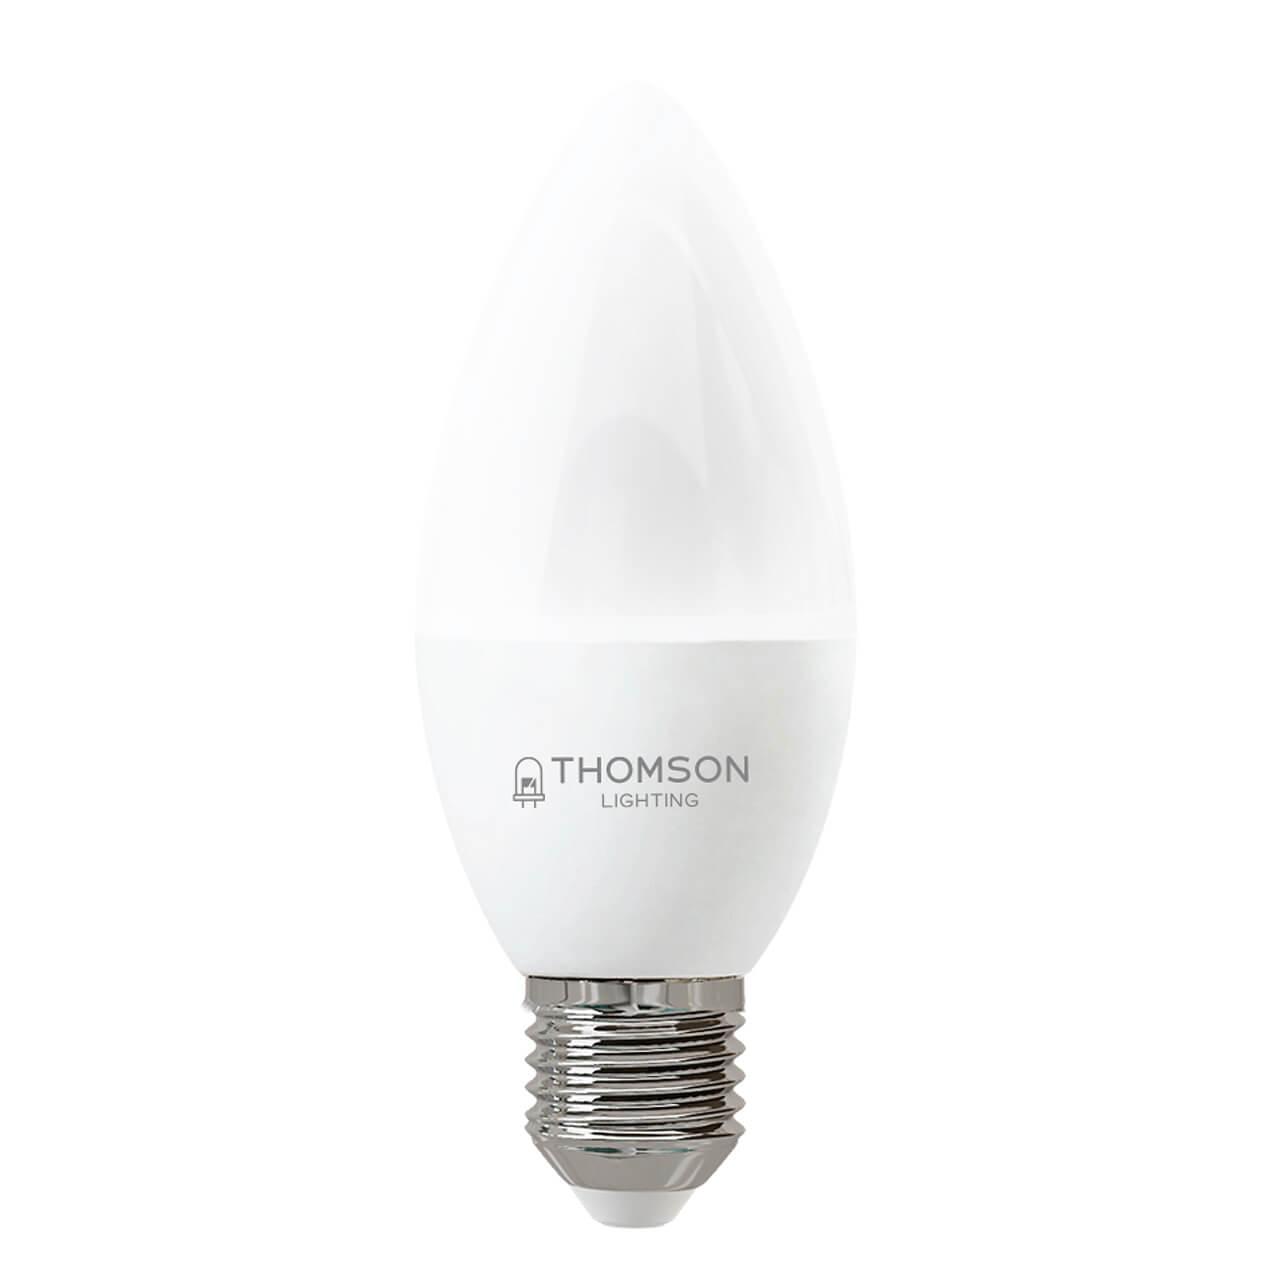 TH-B2359 Лампа светодиодная E27 6W 6500K свеча матовая Thomson